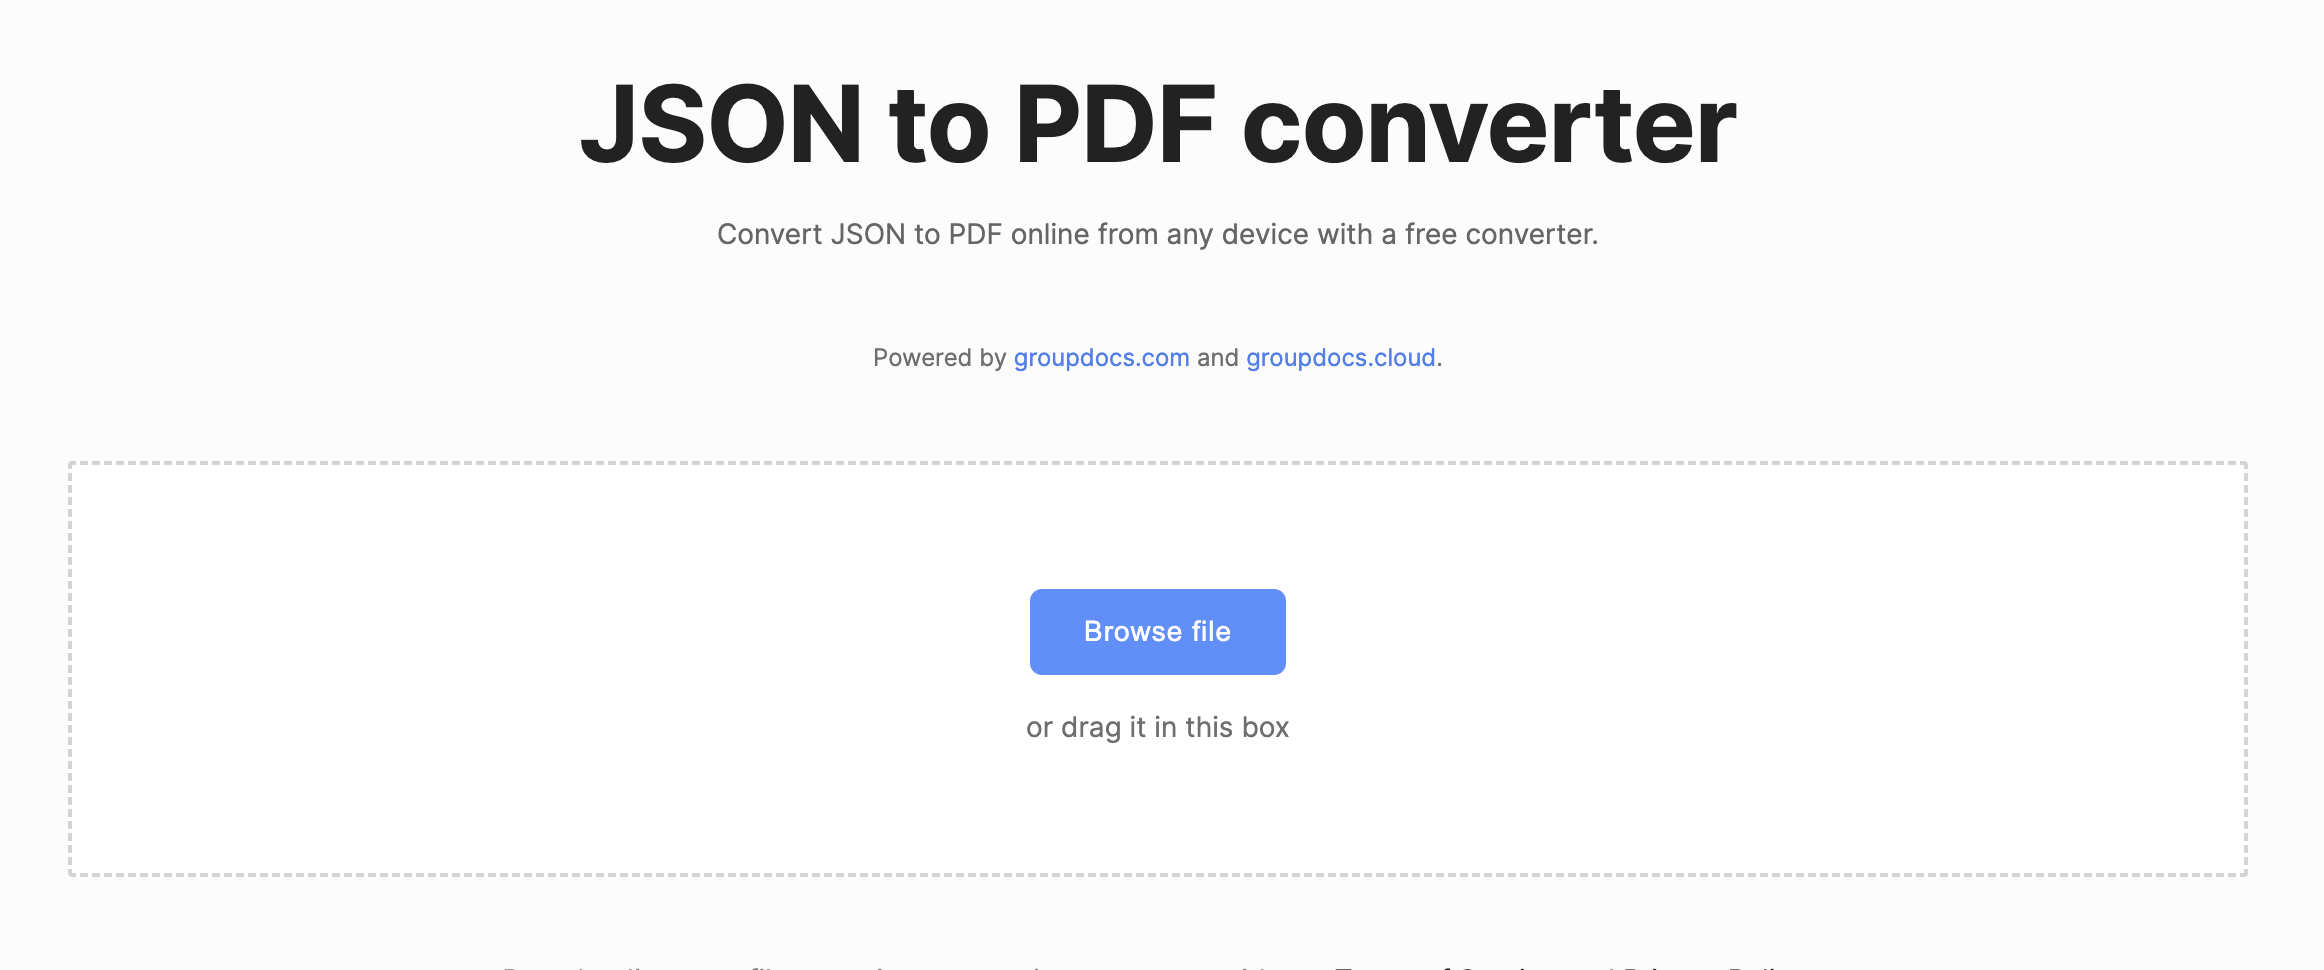 Konvertieren Sie JSON online in PDF